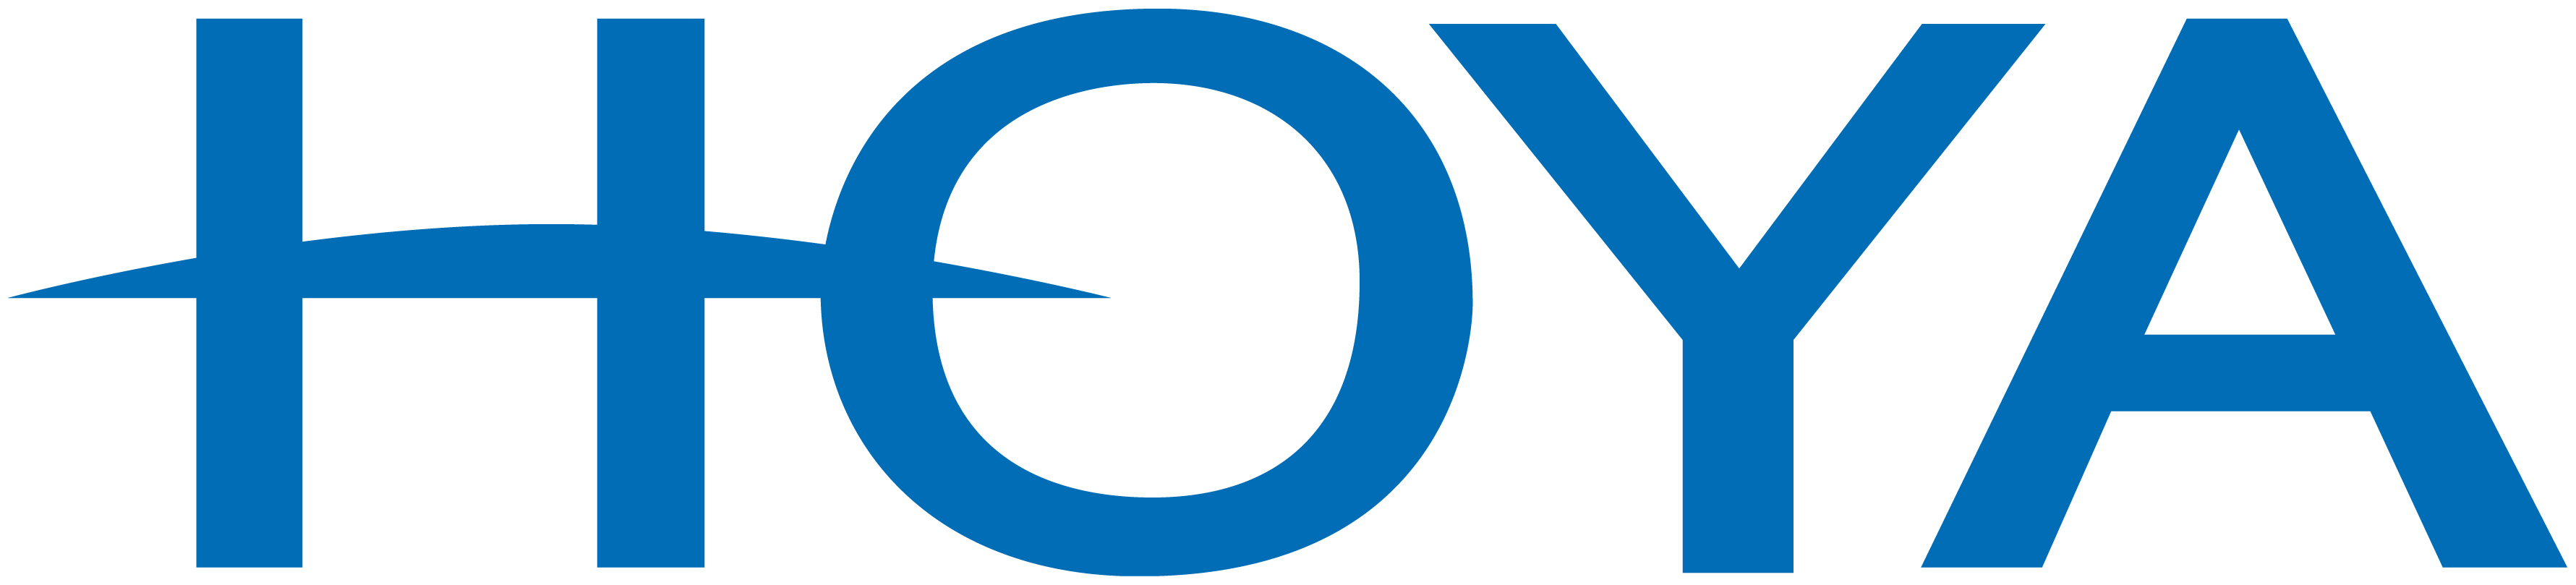 Hoya logo